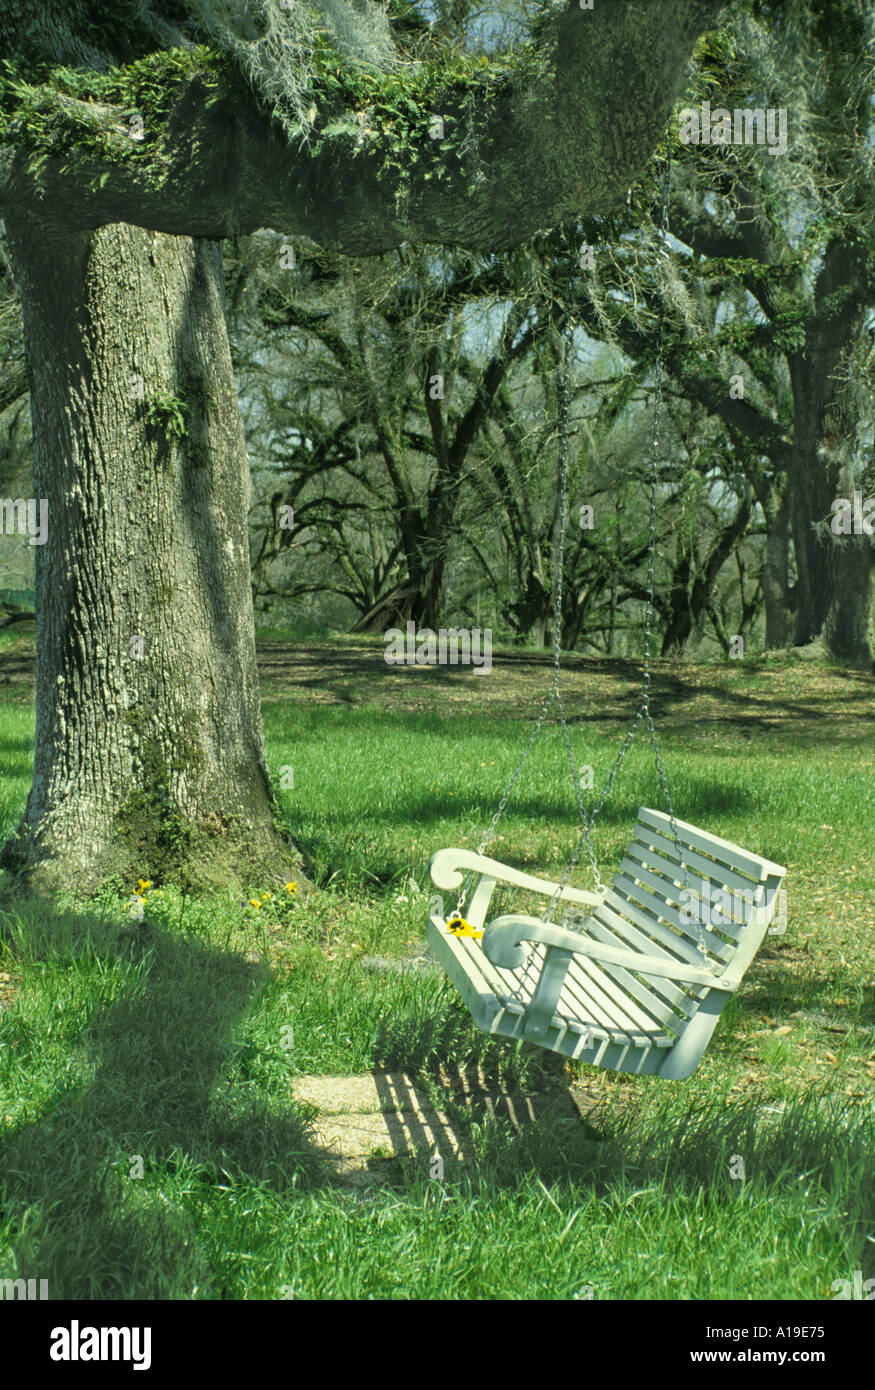 Friedliche Szene: eine weiß lackierte Holz Schaukel hängt von einer riesigen Eiche mit spanischem Moos und Farnen in einem ruhigen Garten, Louisiana USA Stockfoto